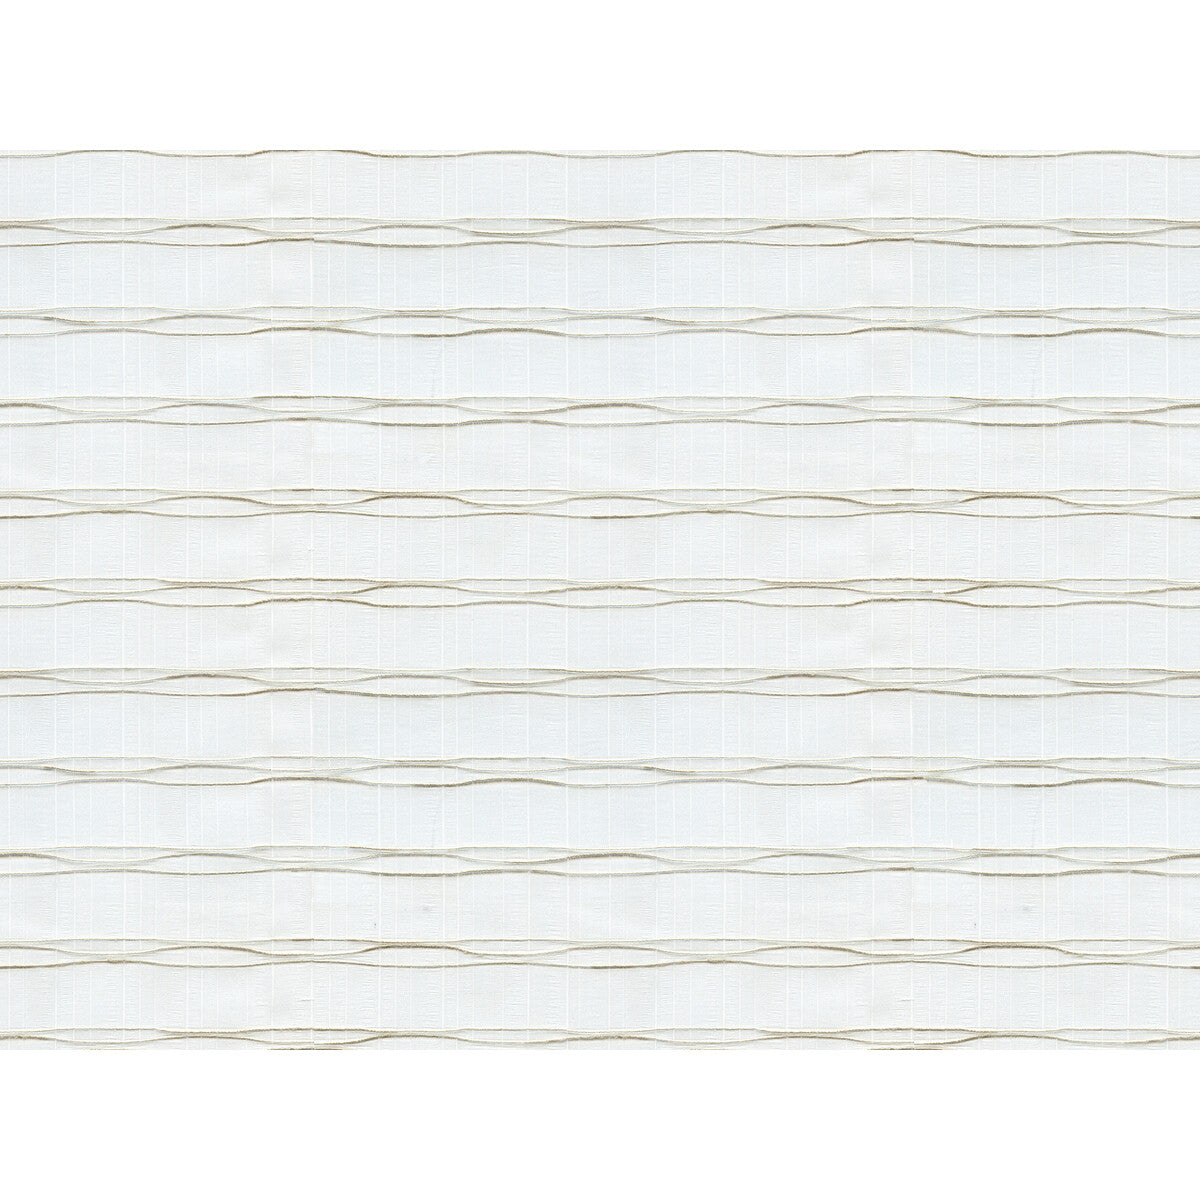 Kravet Basics fabric in 4495-116 color - pattern 4495.116.0 - by Kravet Basics